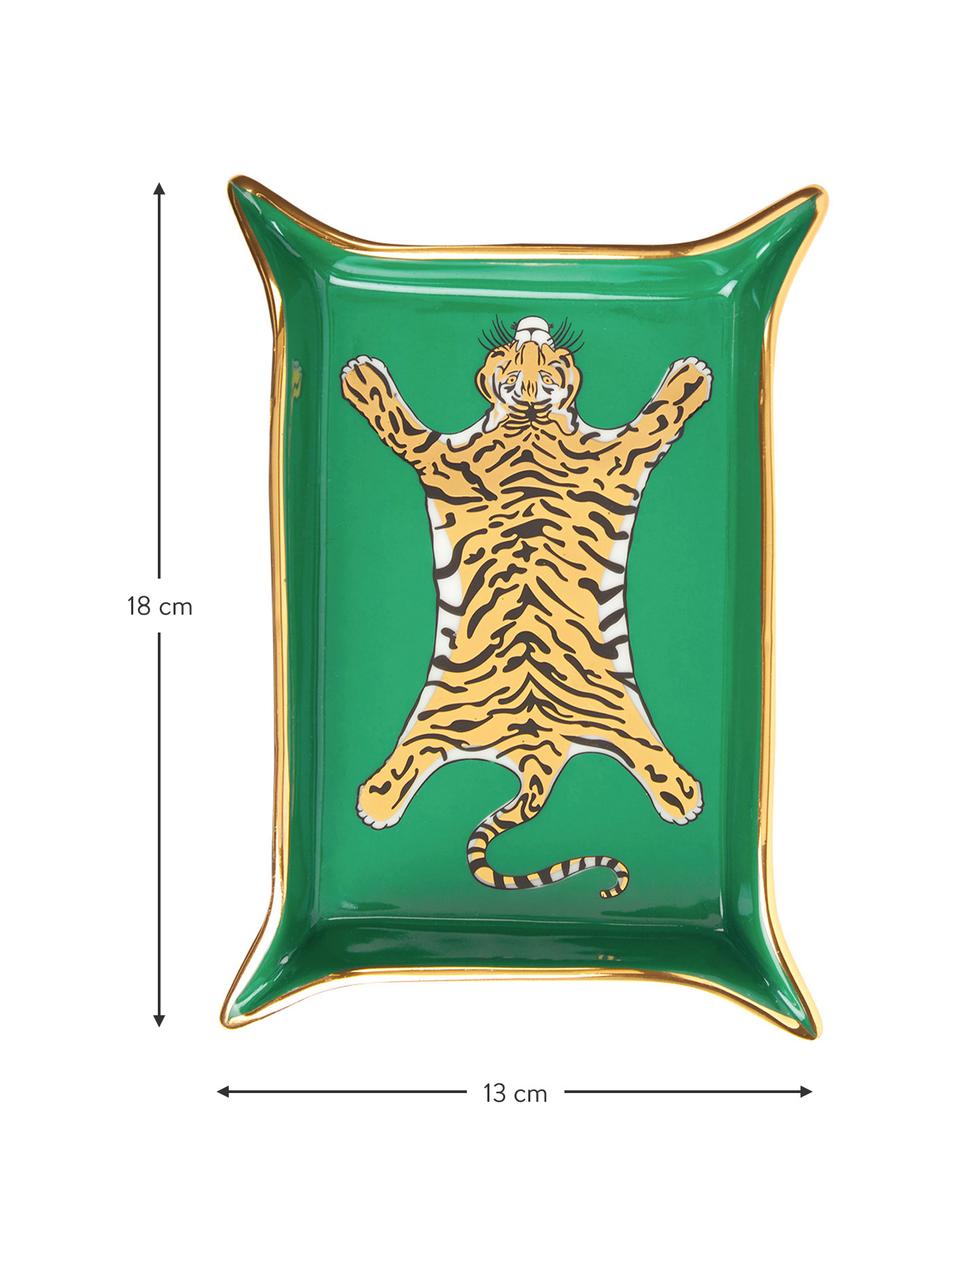 Ciotola Tiger, Porcellana, accenti dorati, Interno: verde, oro, beige Esterno: bianco, L 18 x P 13 cm